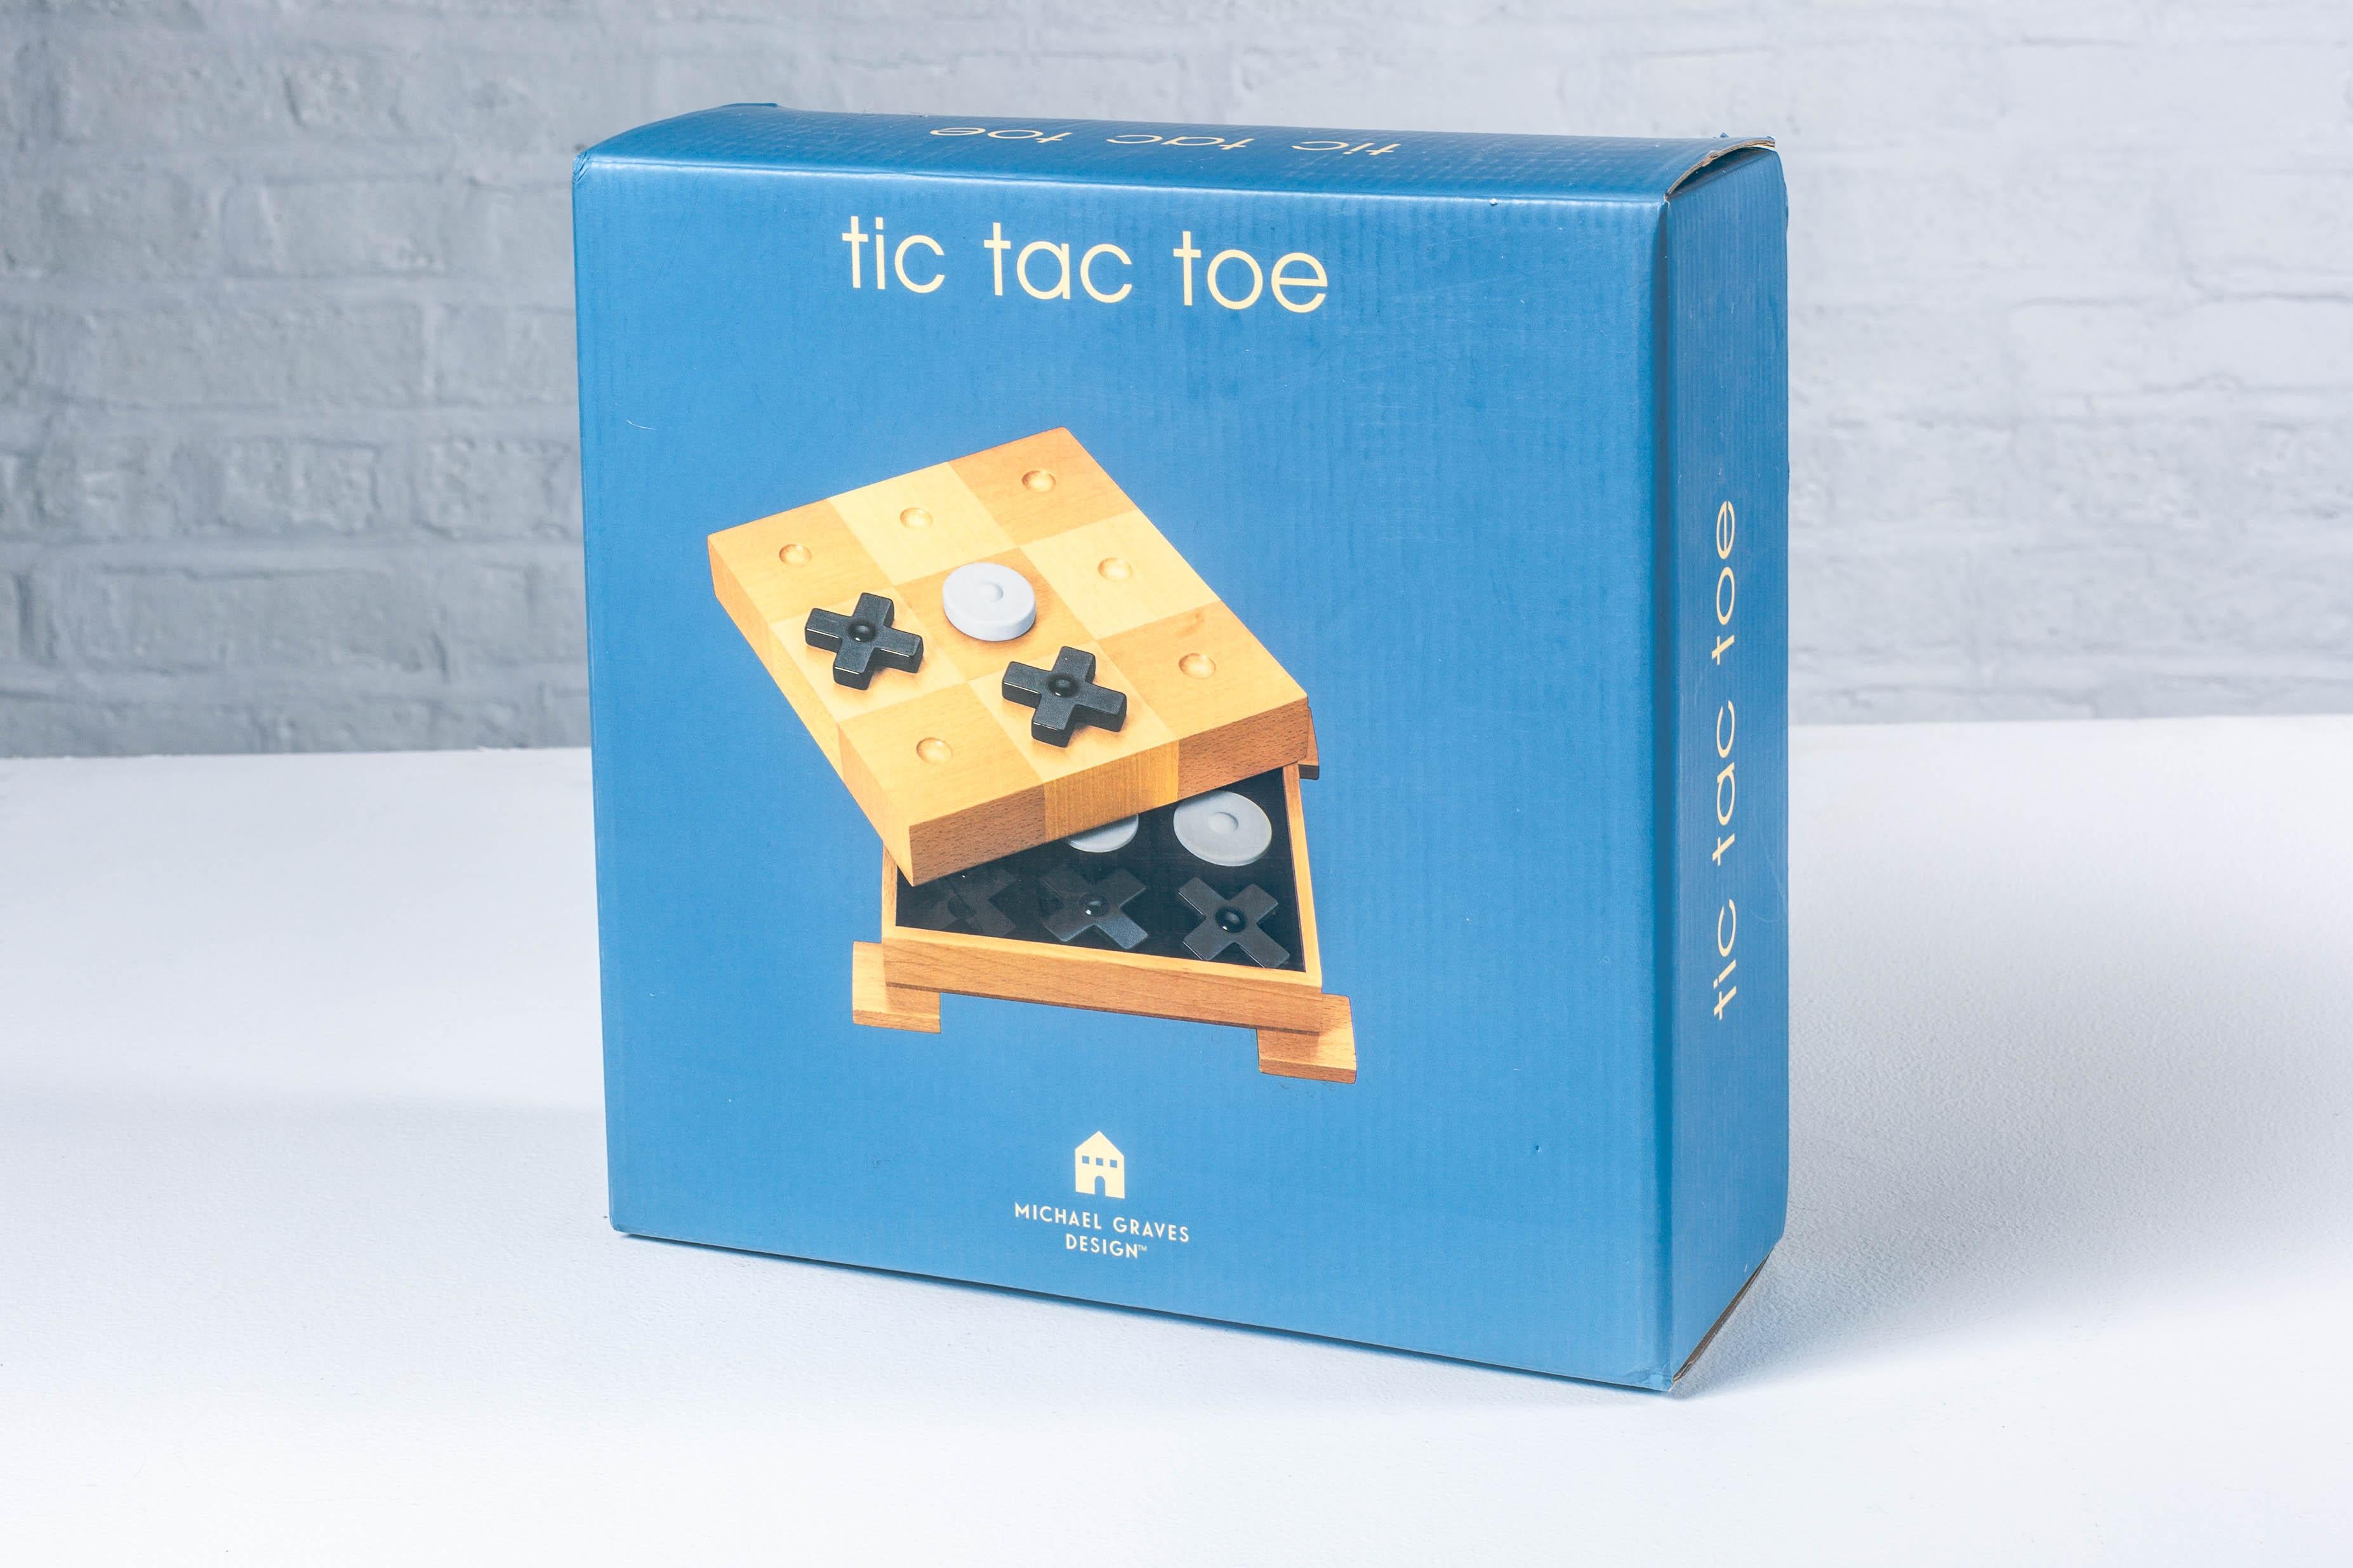 Dieses Tic Tac Toe-Brettspiel wurde von Michael Graves entworfen und hat einen eleganten und starken postmodernen Stil. Das Schachbrett steht auf 4 quadratischen Füßen und verleiht dem Spiel das Aussehen eines Denkmals auf Sockeln. Das Brett dient